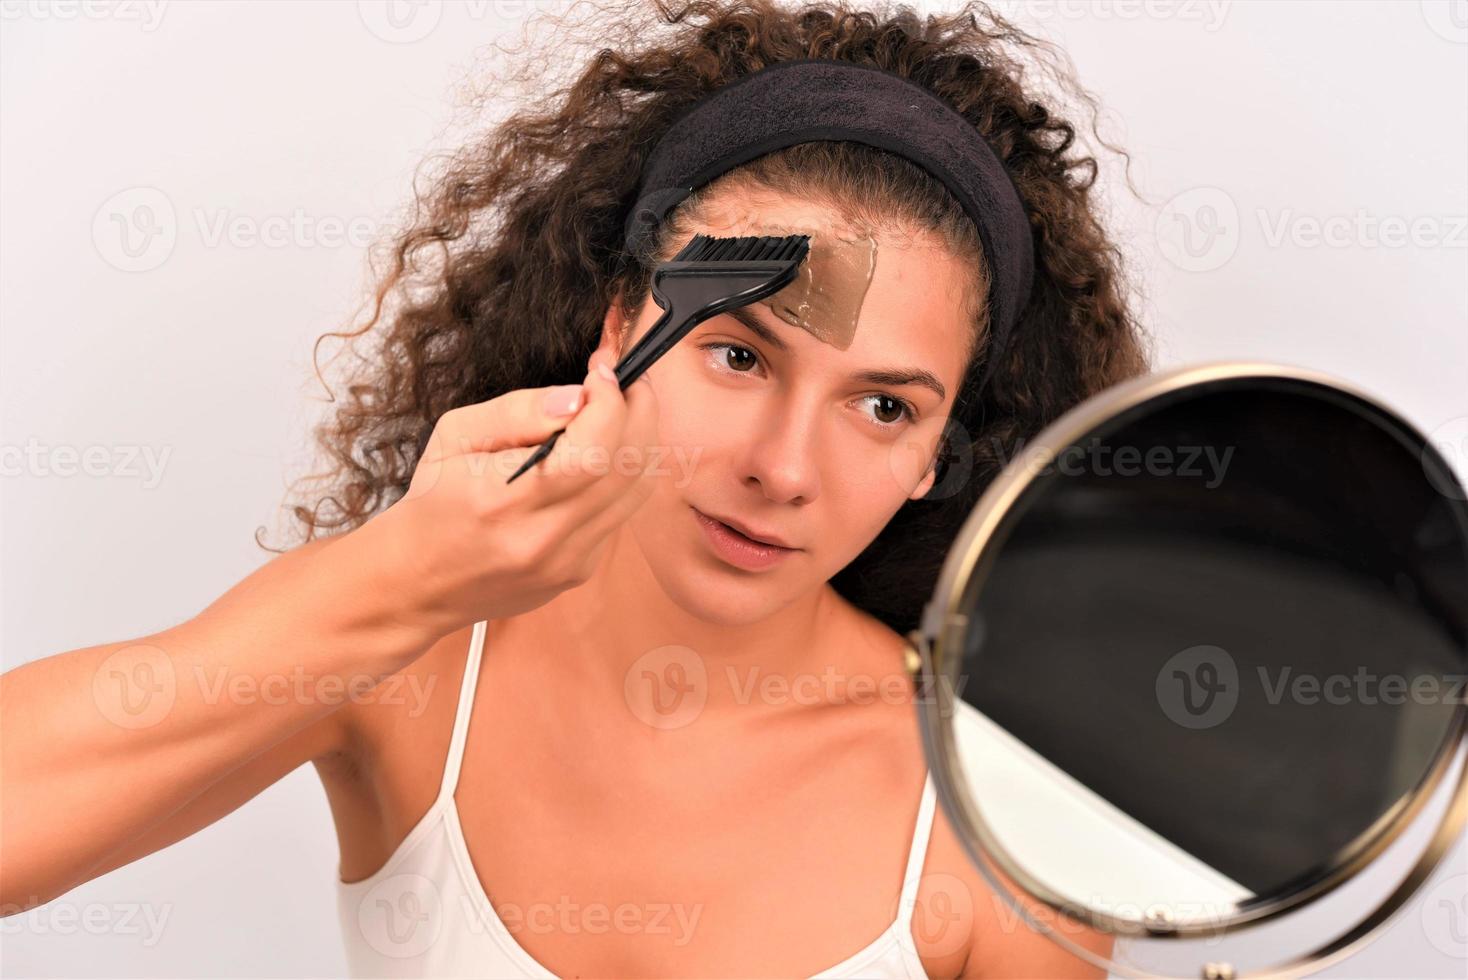 procedimientos de belleza concepto de cuidado de la piel. mujer joven aplicando máscara facial de arcilla de barro gris a su cara foto